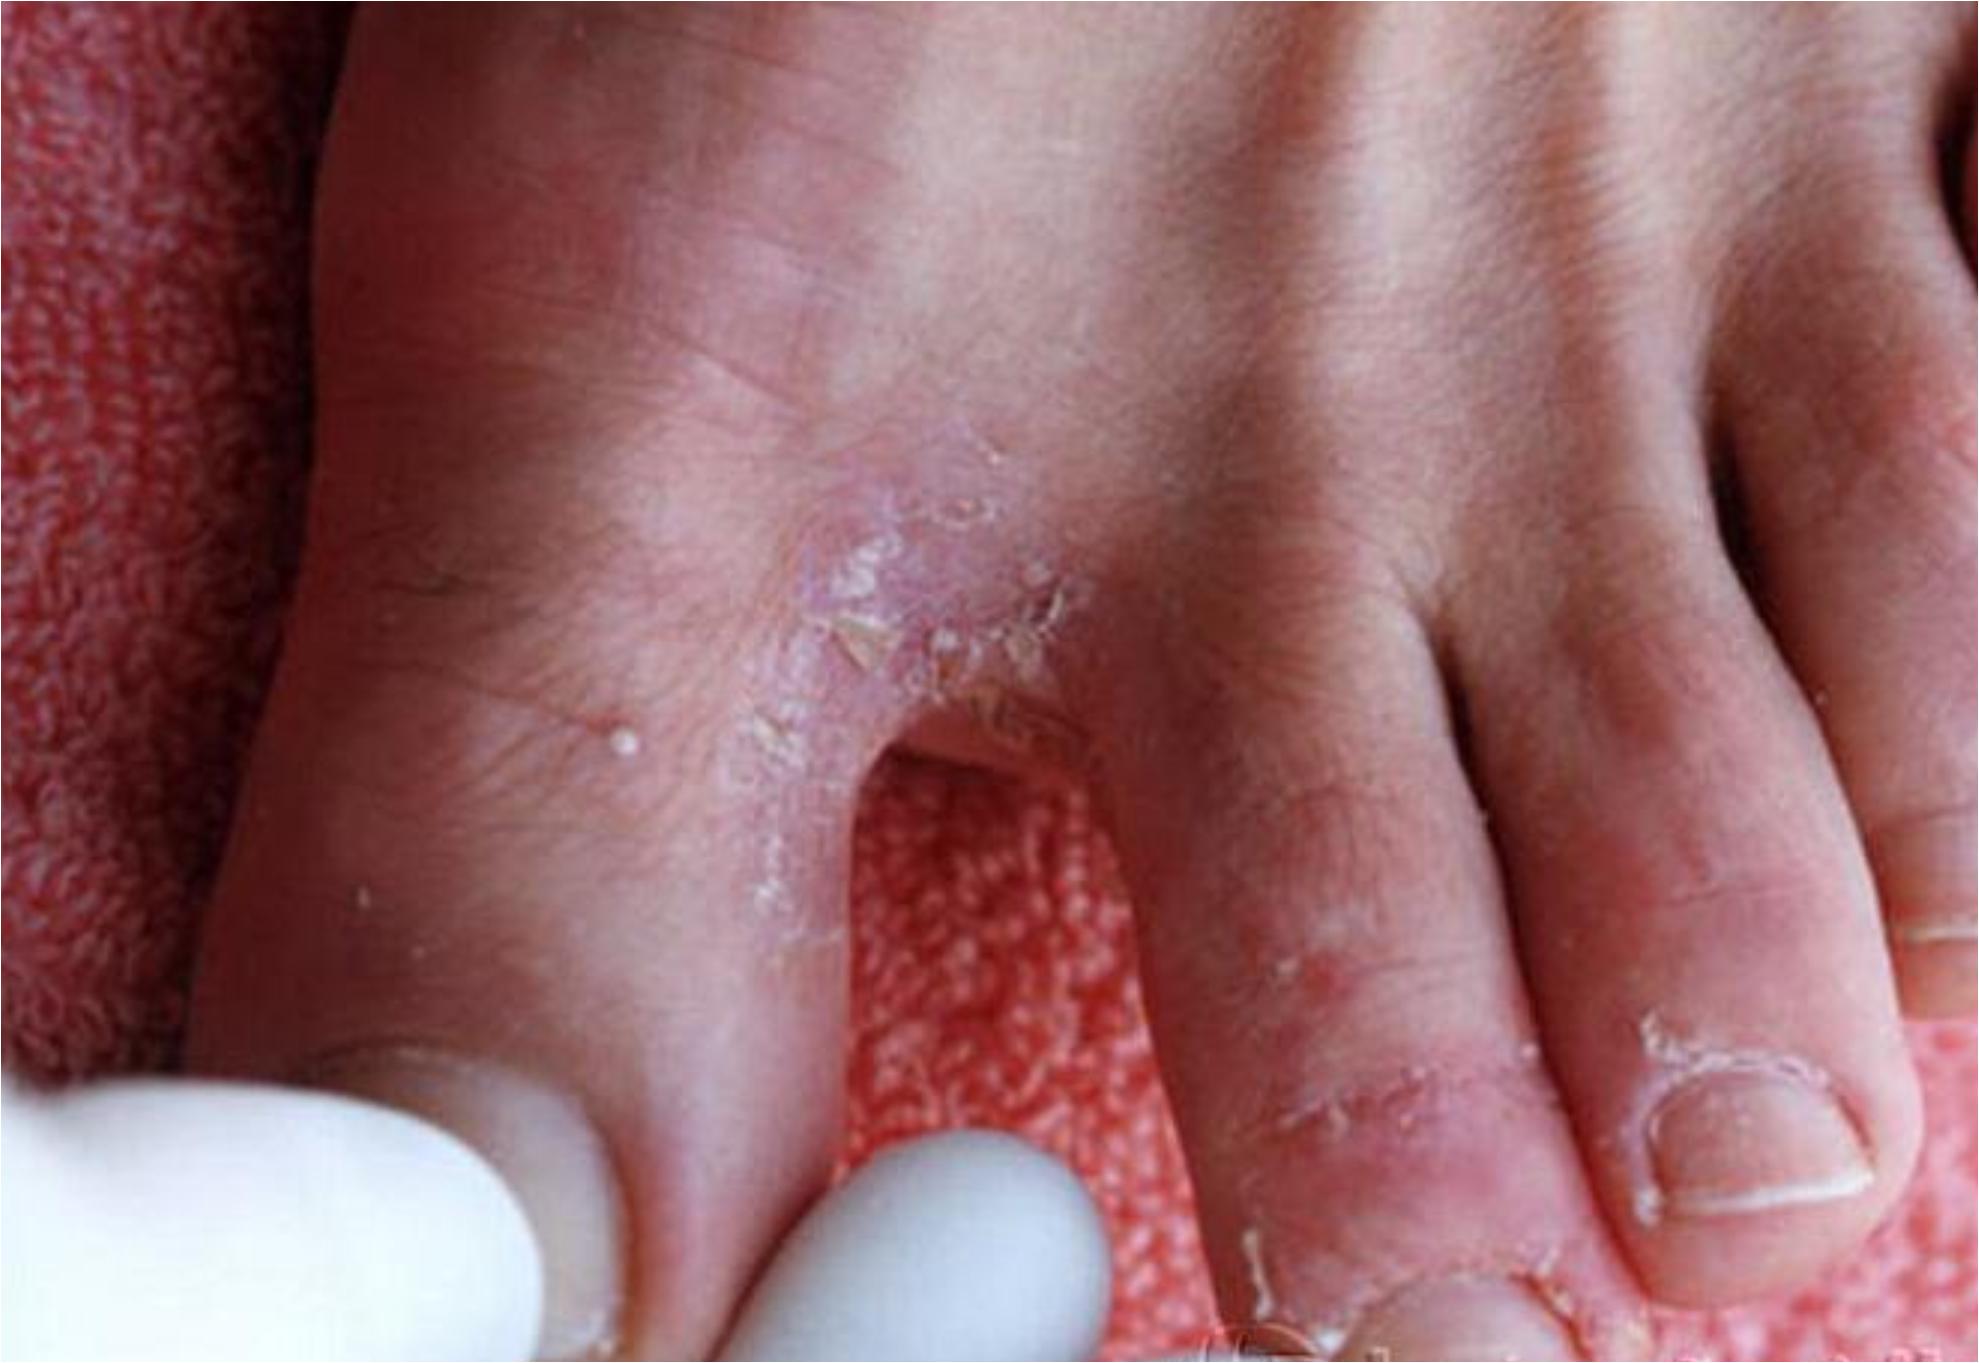 Μύκητες στα πόδια από την άμμο και τις σαγιονάρες το καλοκαίρι: Τα συμπτώματα και πως να τους αντιμετωπίσεις